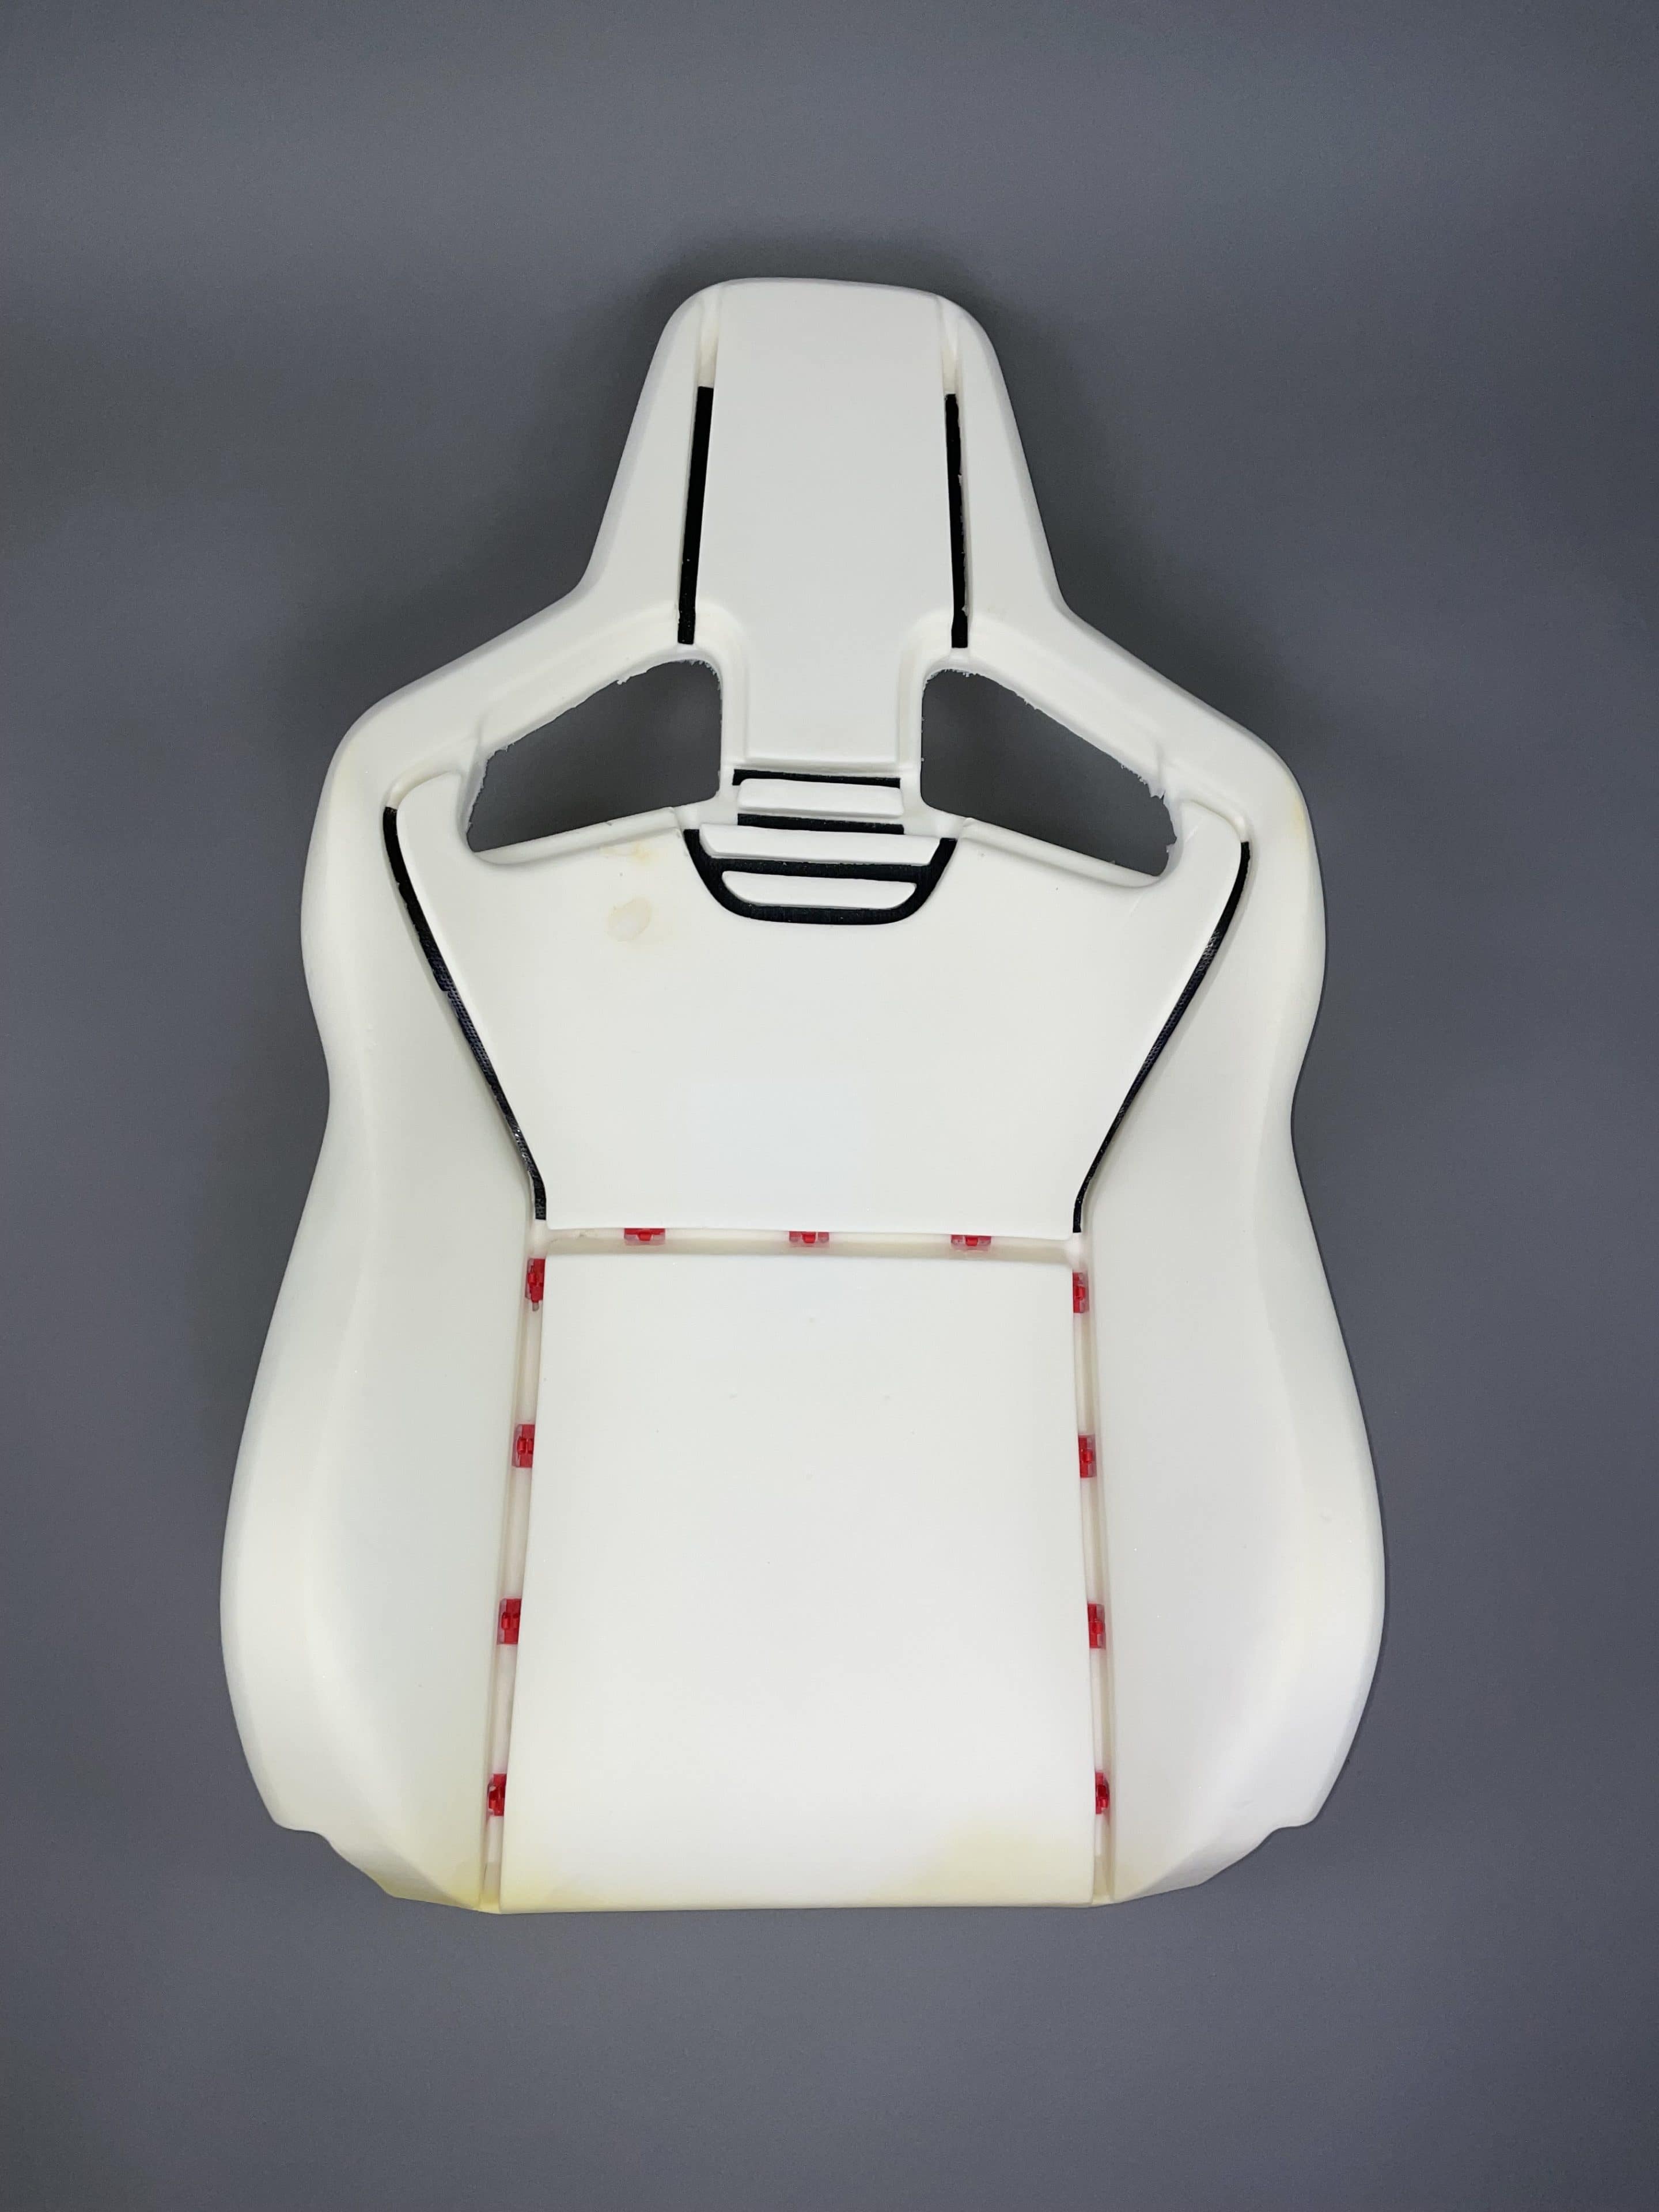 RECARO (Cross) Sportster CS upholstery set back left online at Carseatz